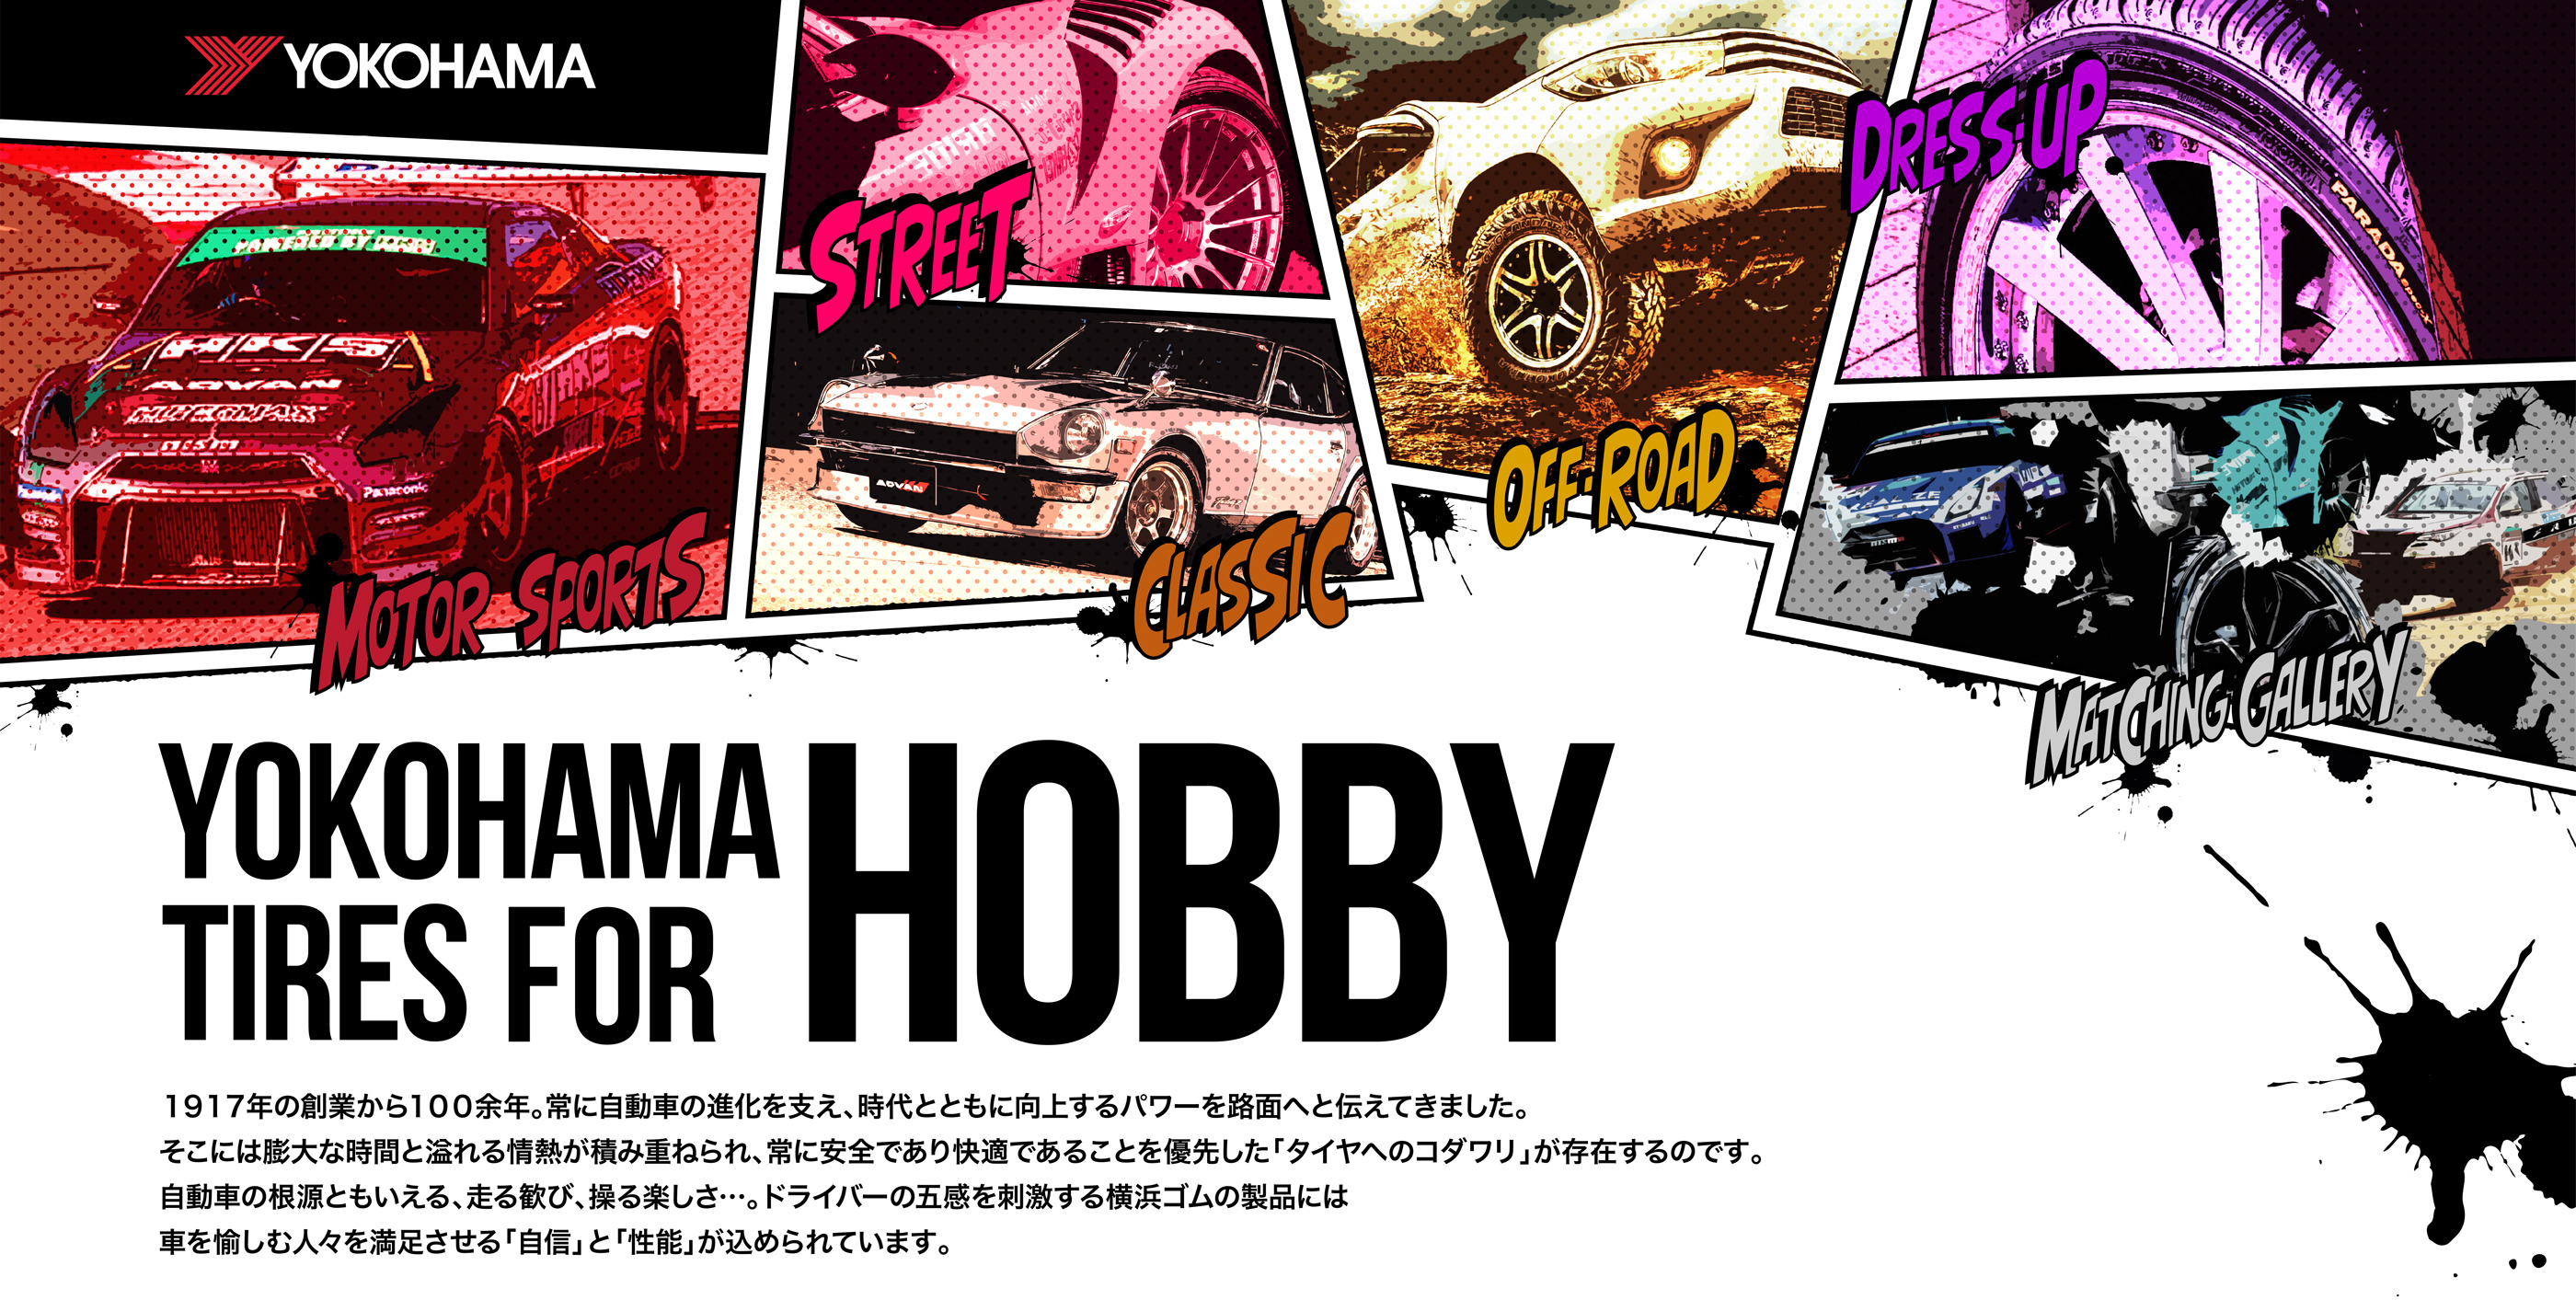 YOKOHAMA TIRES FOR HOBBY.COM